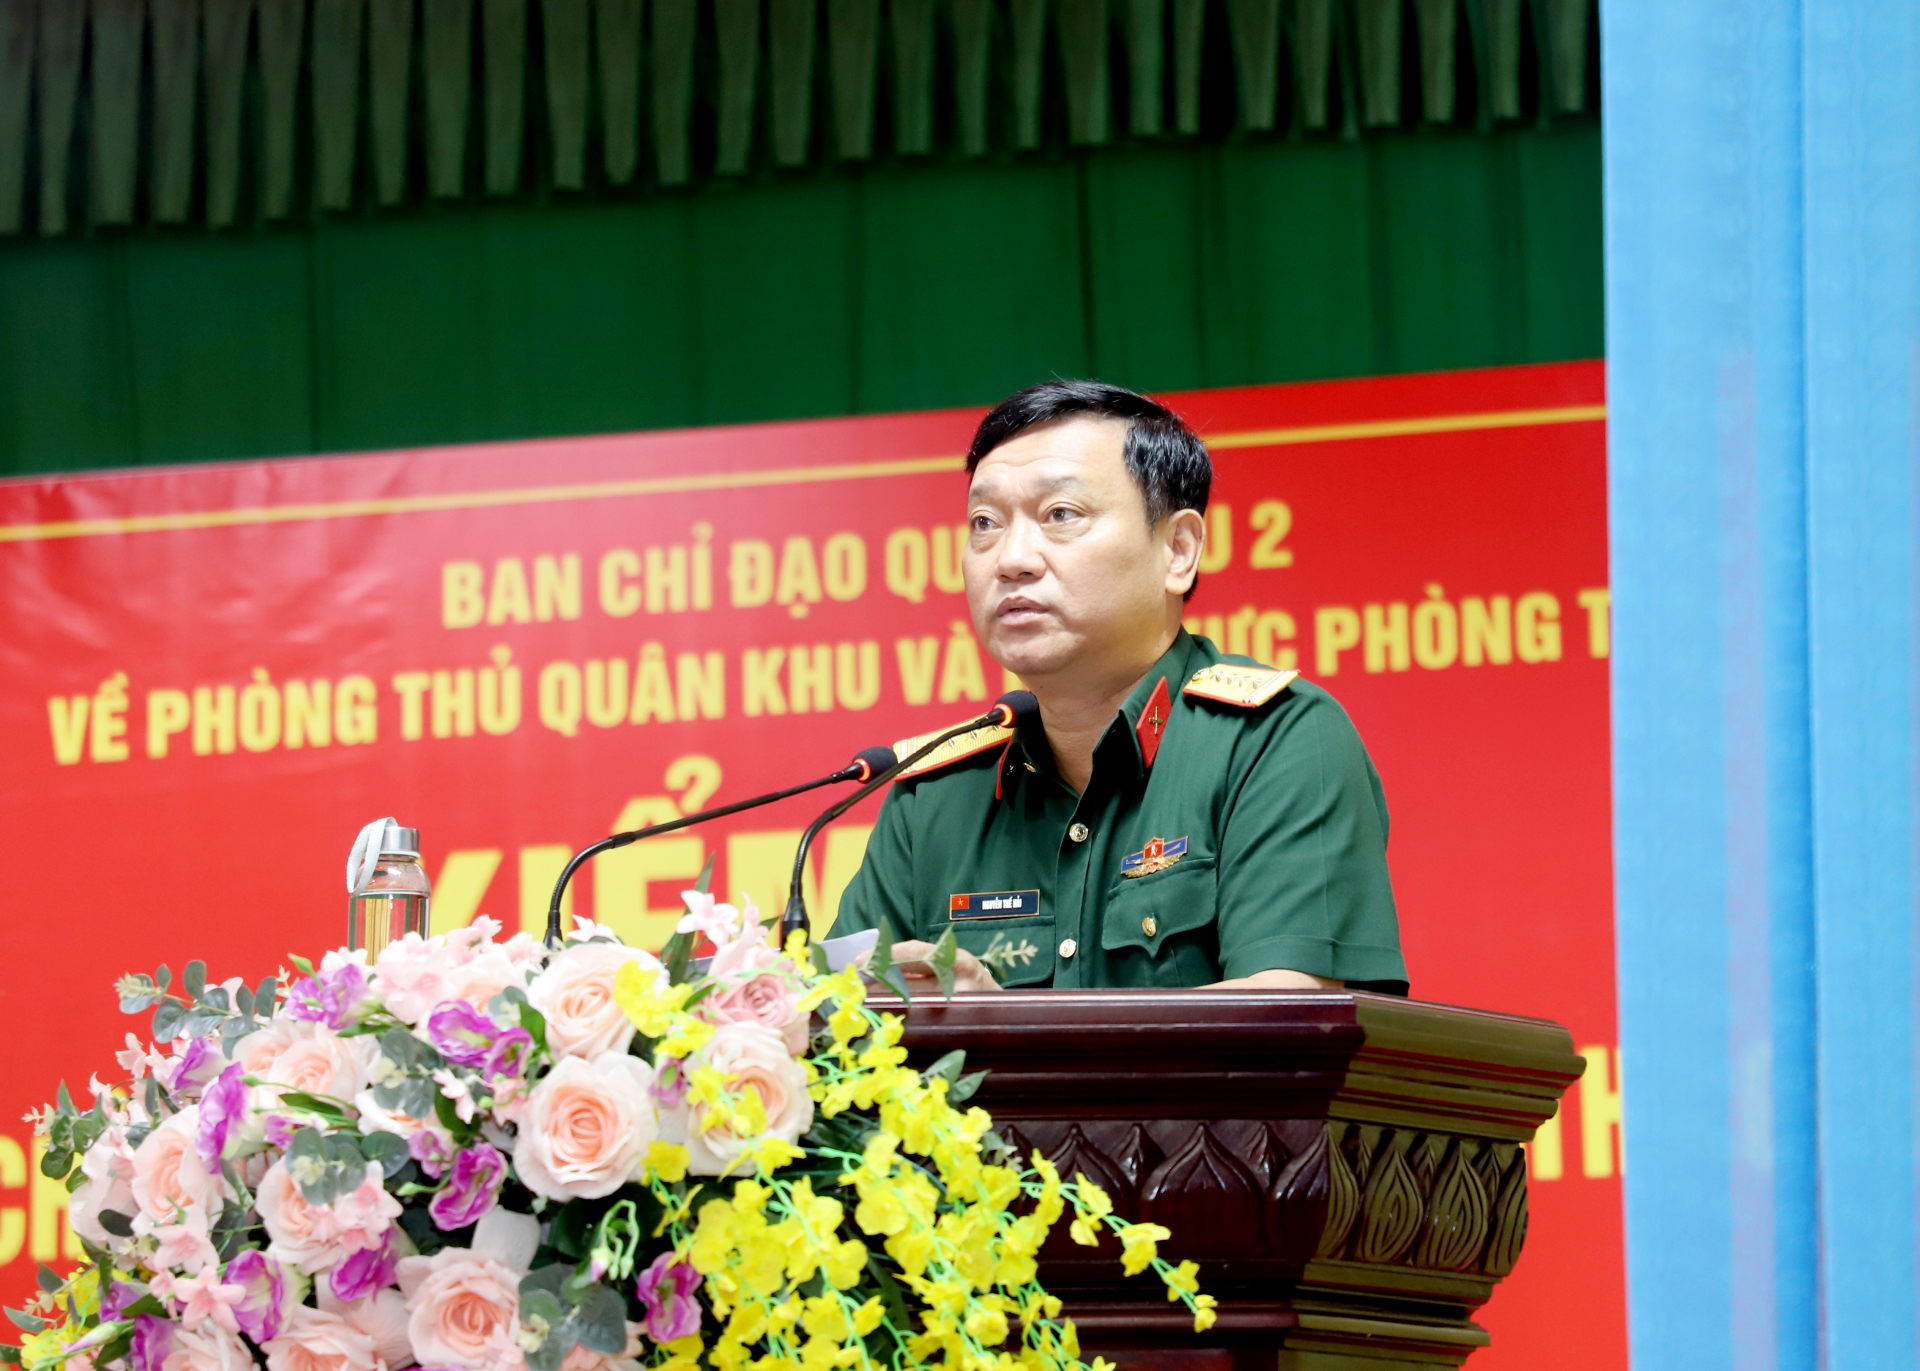 Đại tá Nguyễn Thế Hải, Phó Tham mưu trưởng quân khu báo cáo kết quả kiểm tra.
